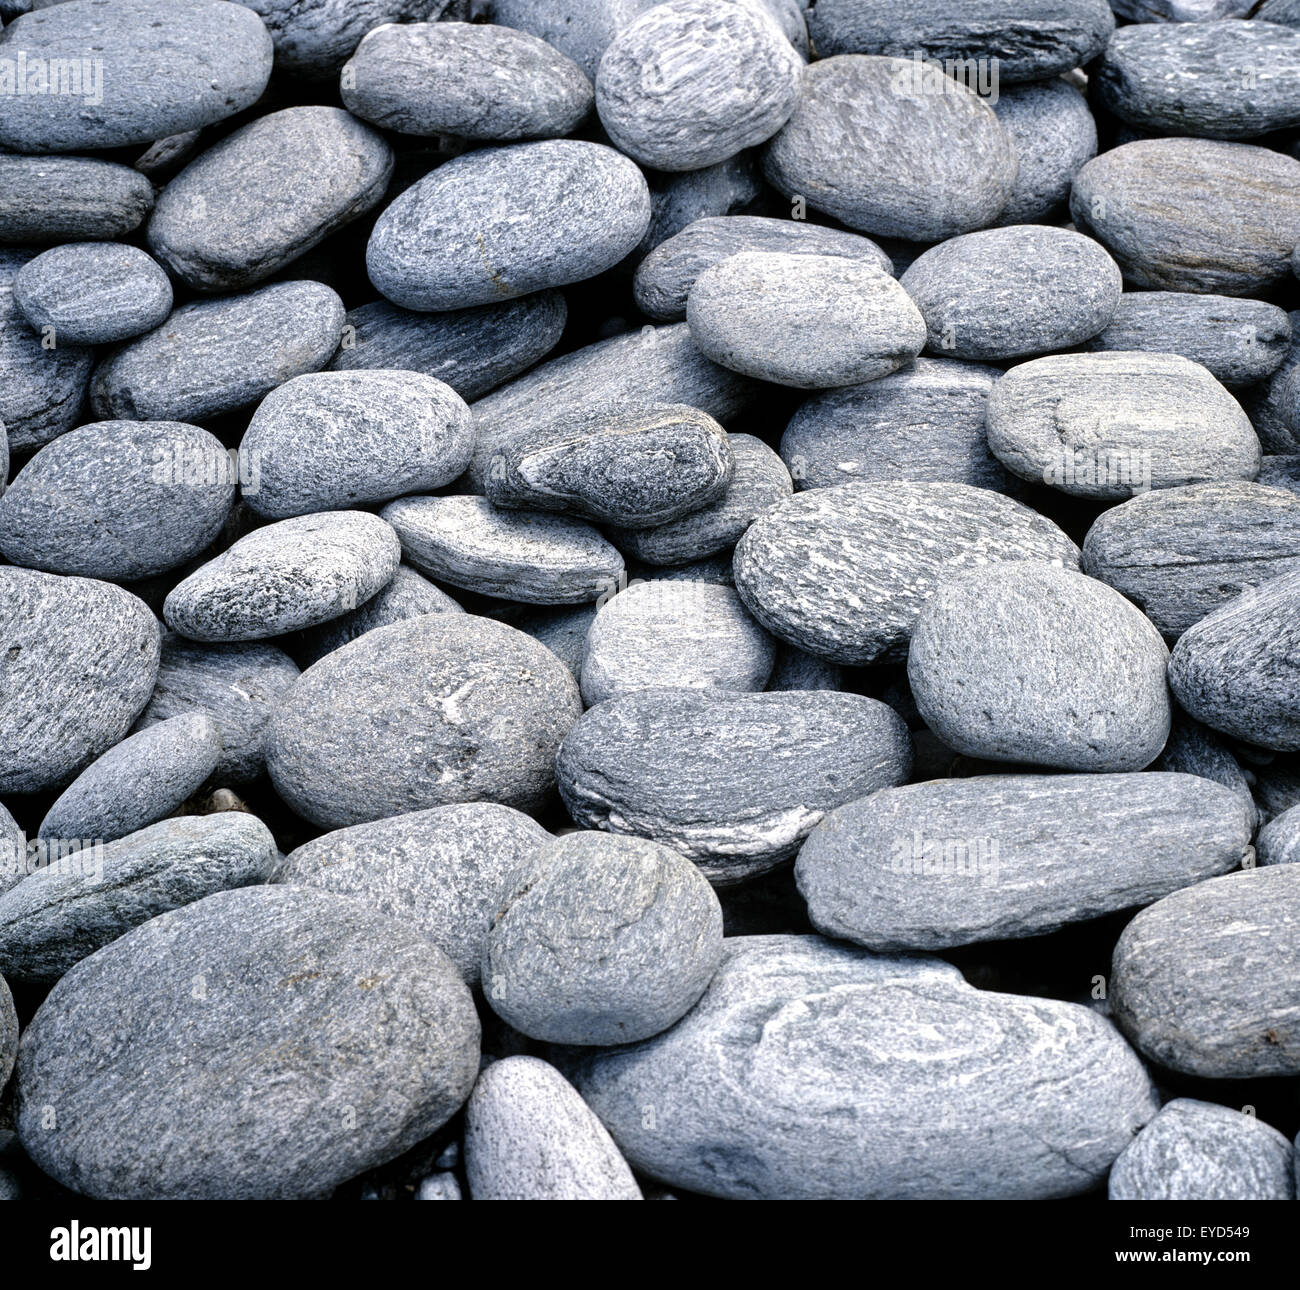 Steine; steiniges Flussbett, Kieselsteine, Landschaft Stock Photo